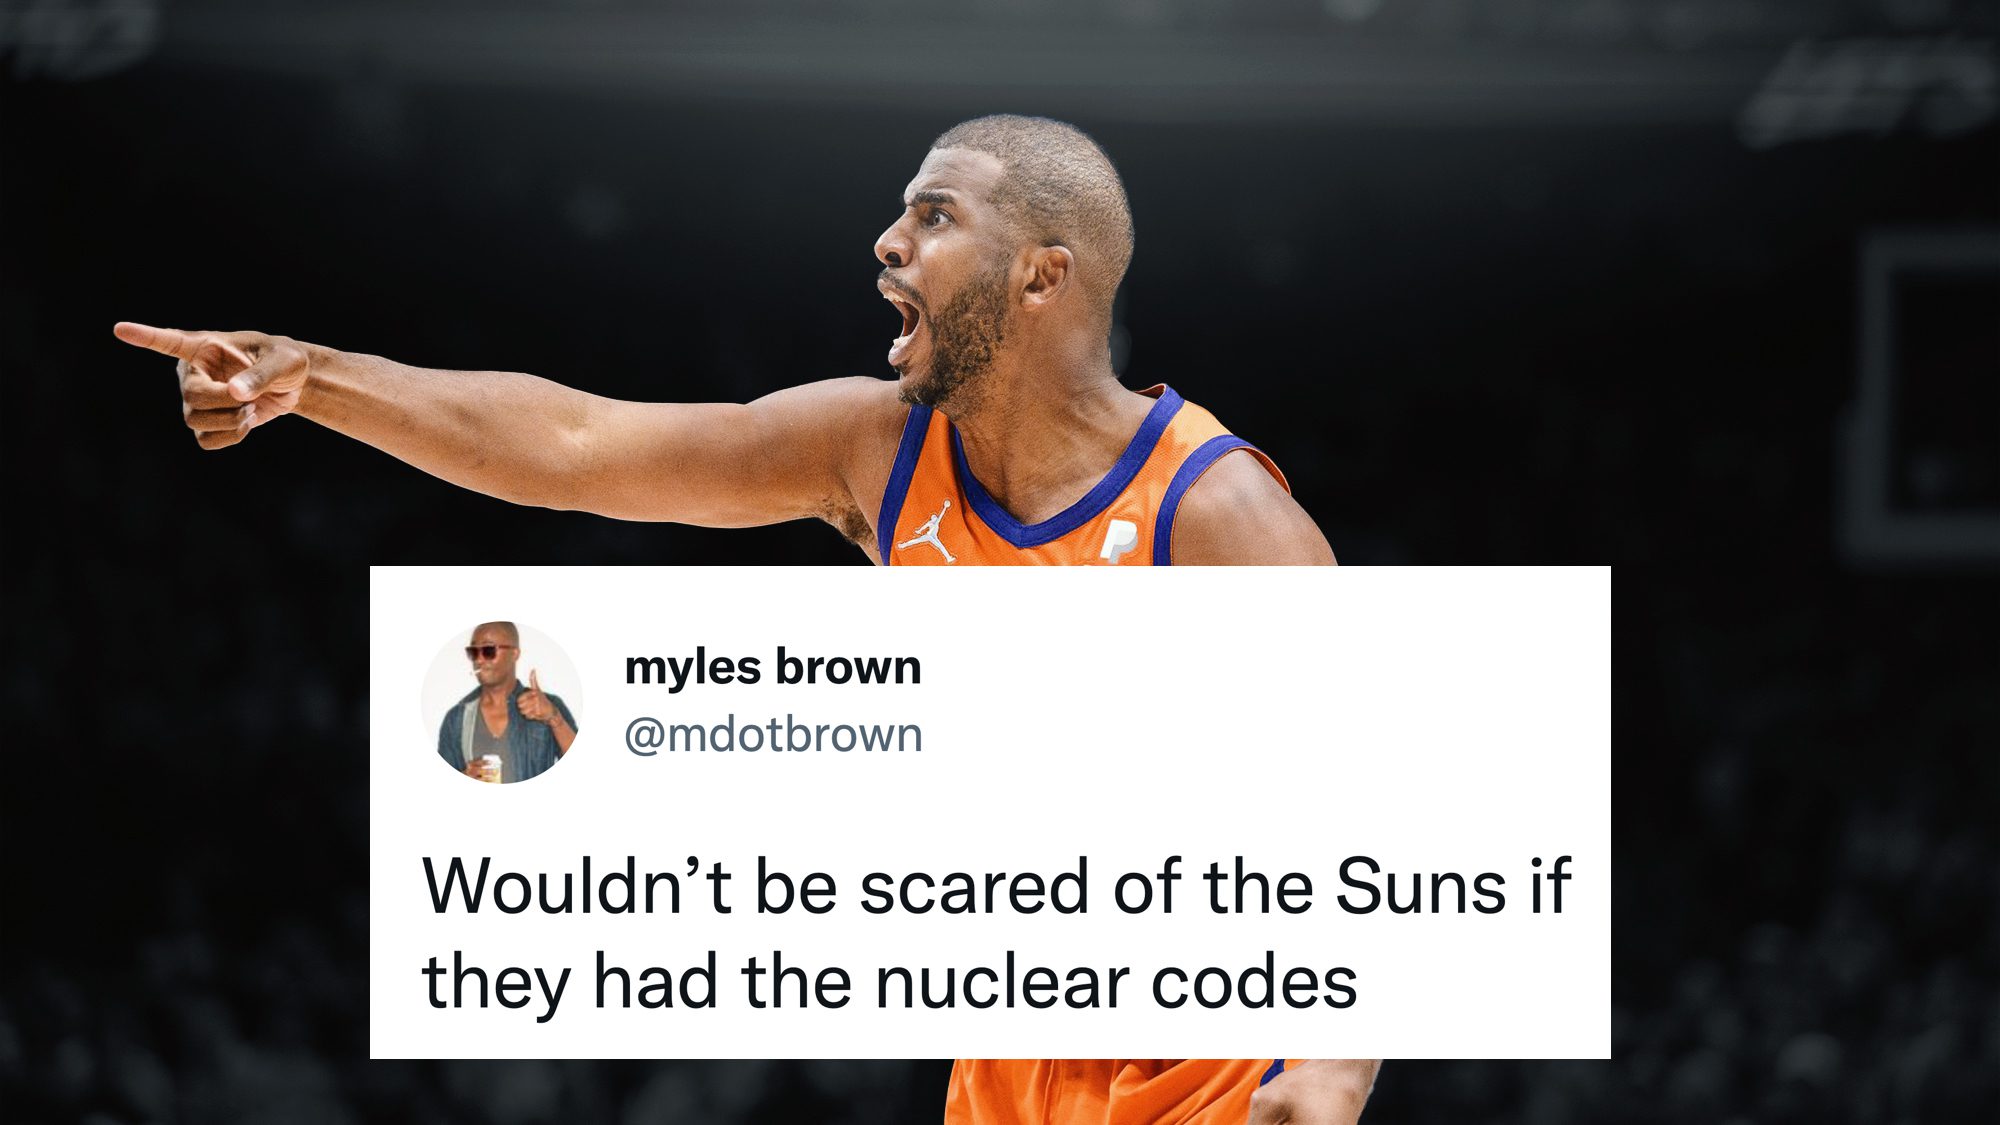 İnternet, Celtics tarafından havaya uçurulduğu için güneşleri acımasızca kızarttı